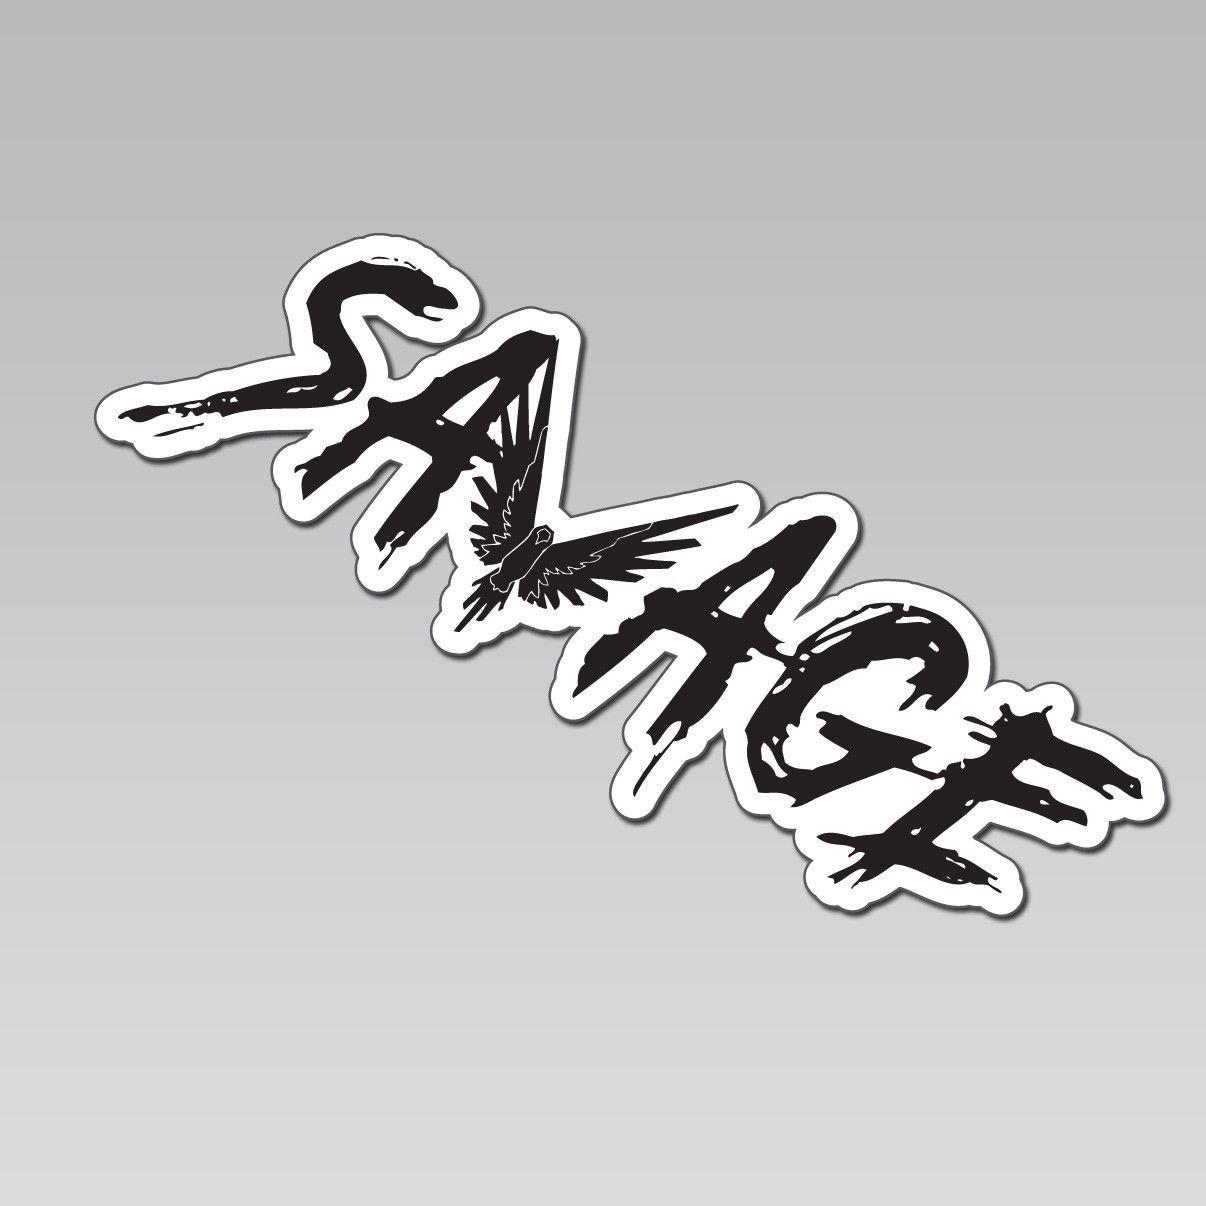 Maverick Logan Paul Savage Logo - Logan Paul's Logang, Maverick, Parrot and Savage Stickers - 1 Stop ...